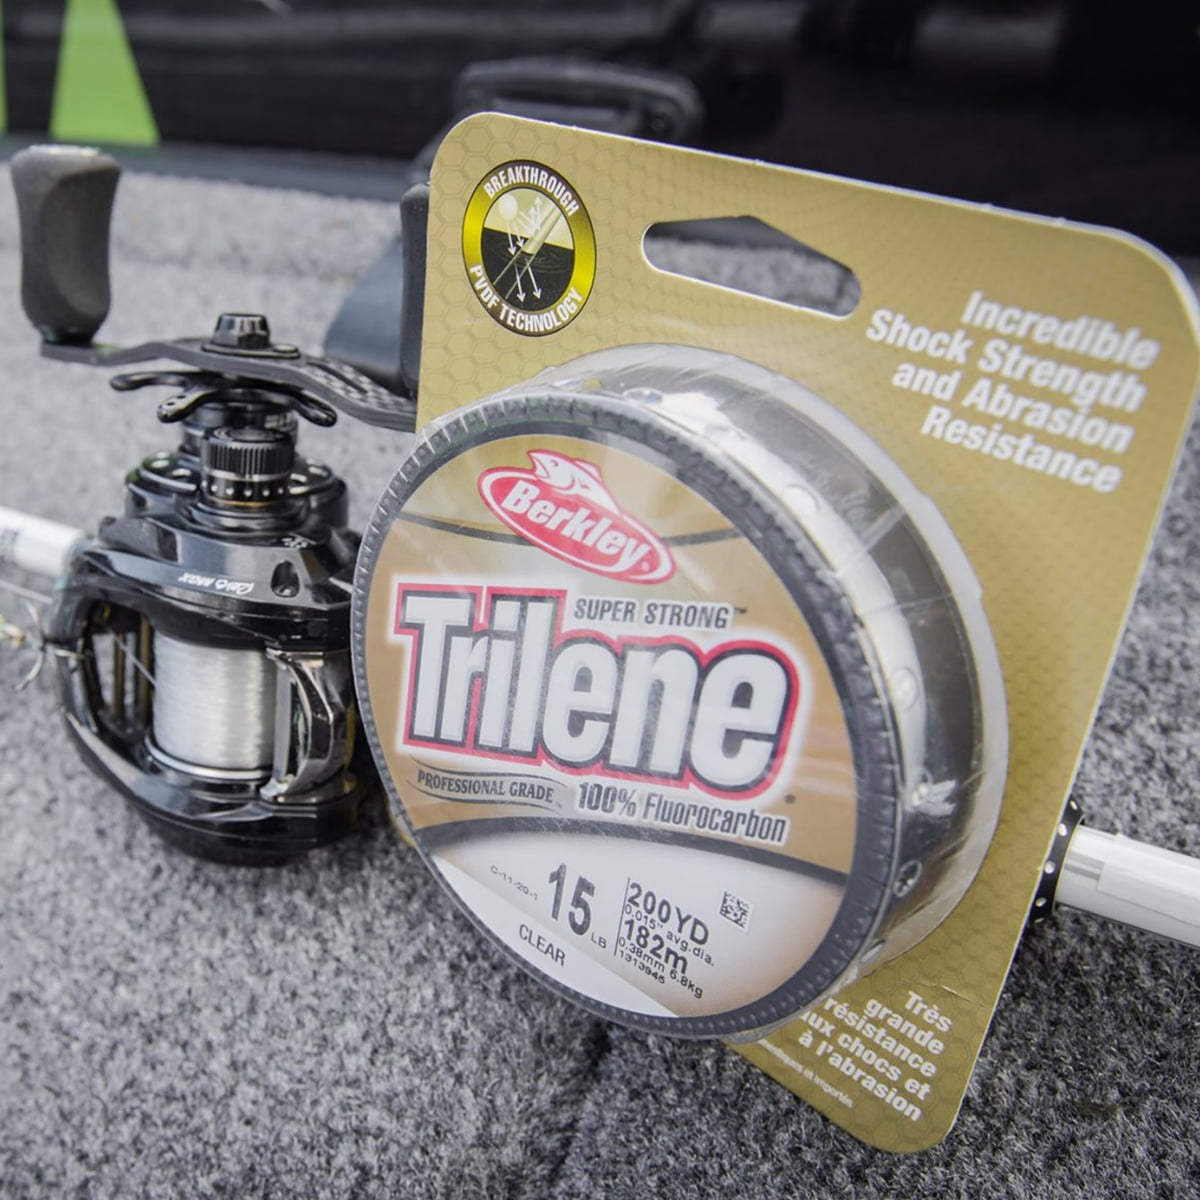 Berkley Trilene 100% Fluorocarbon, Clear, 25lb 11.3kg Fishing Line